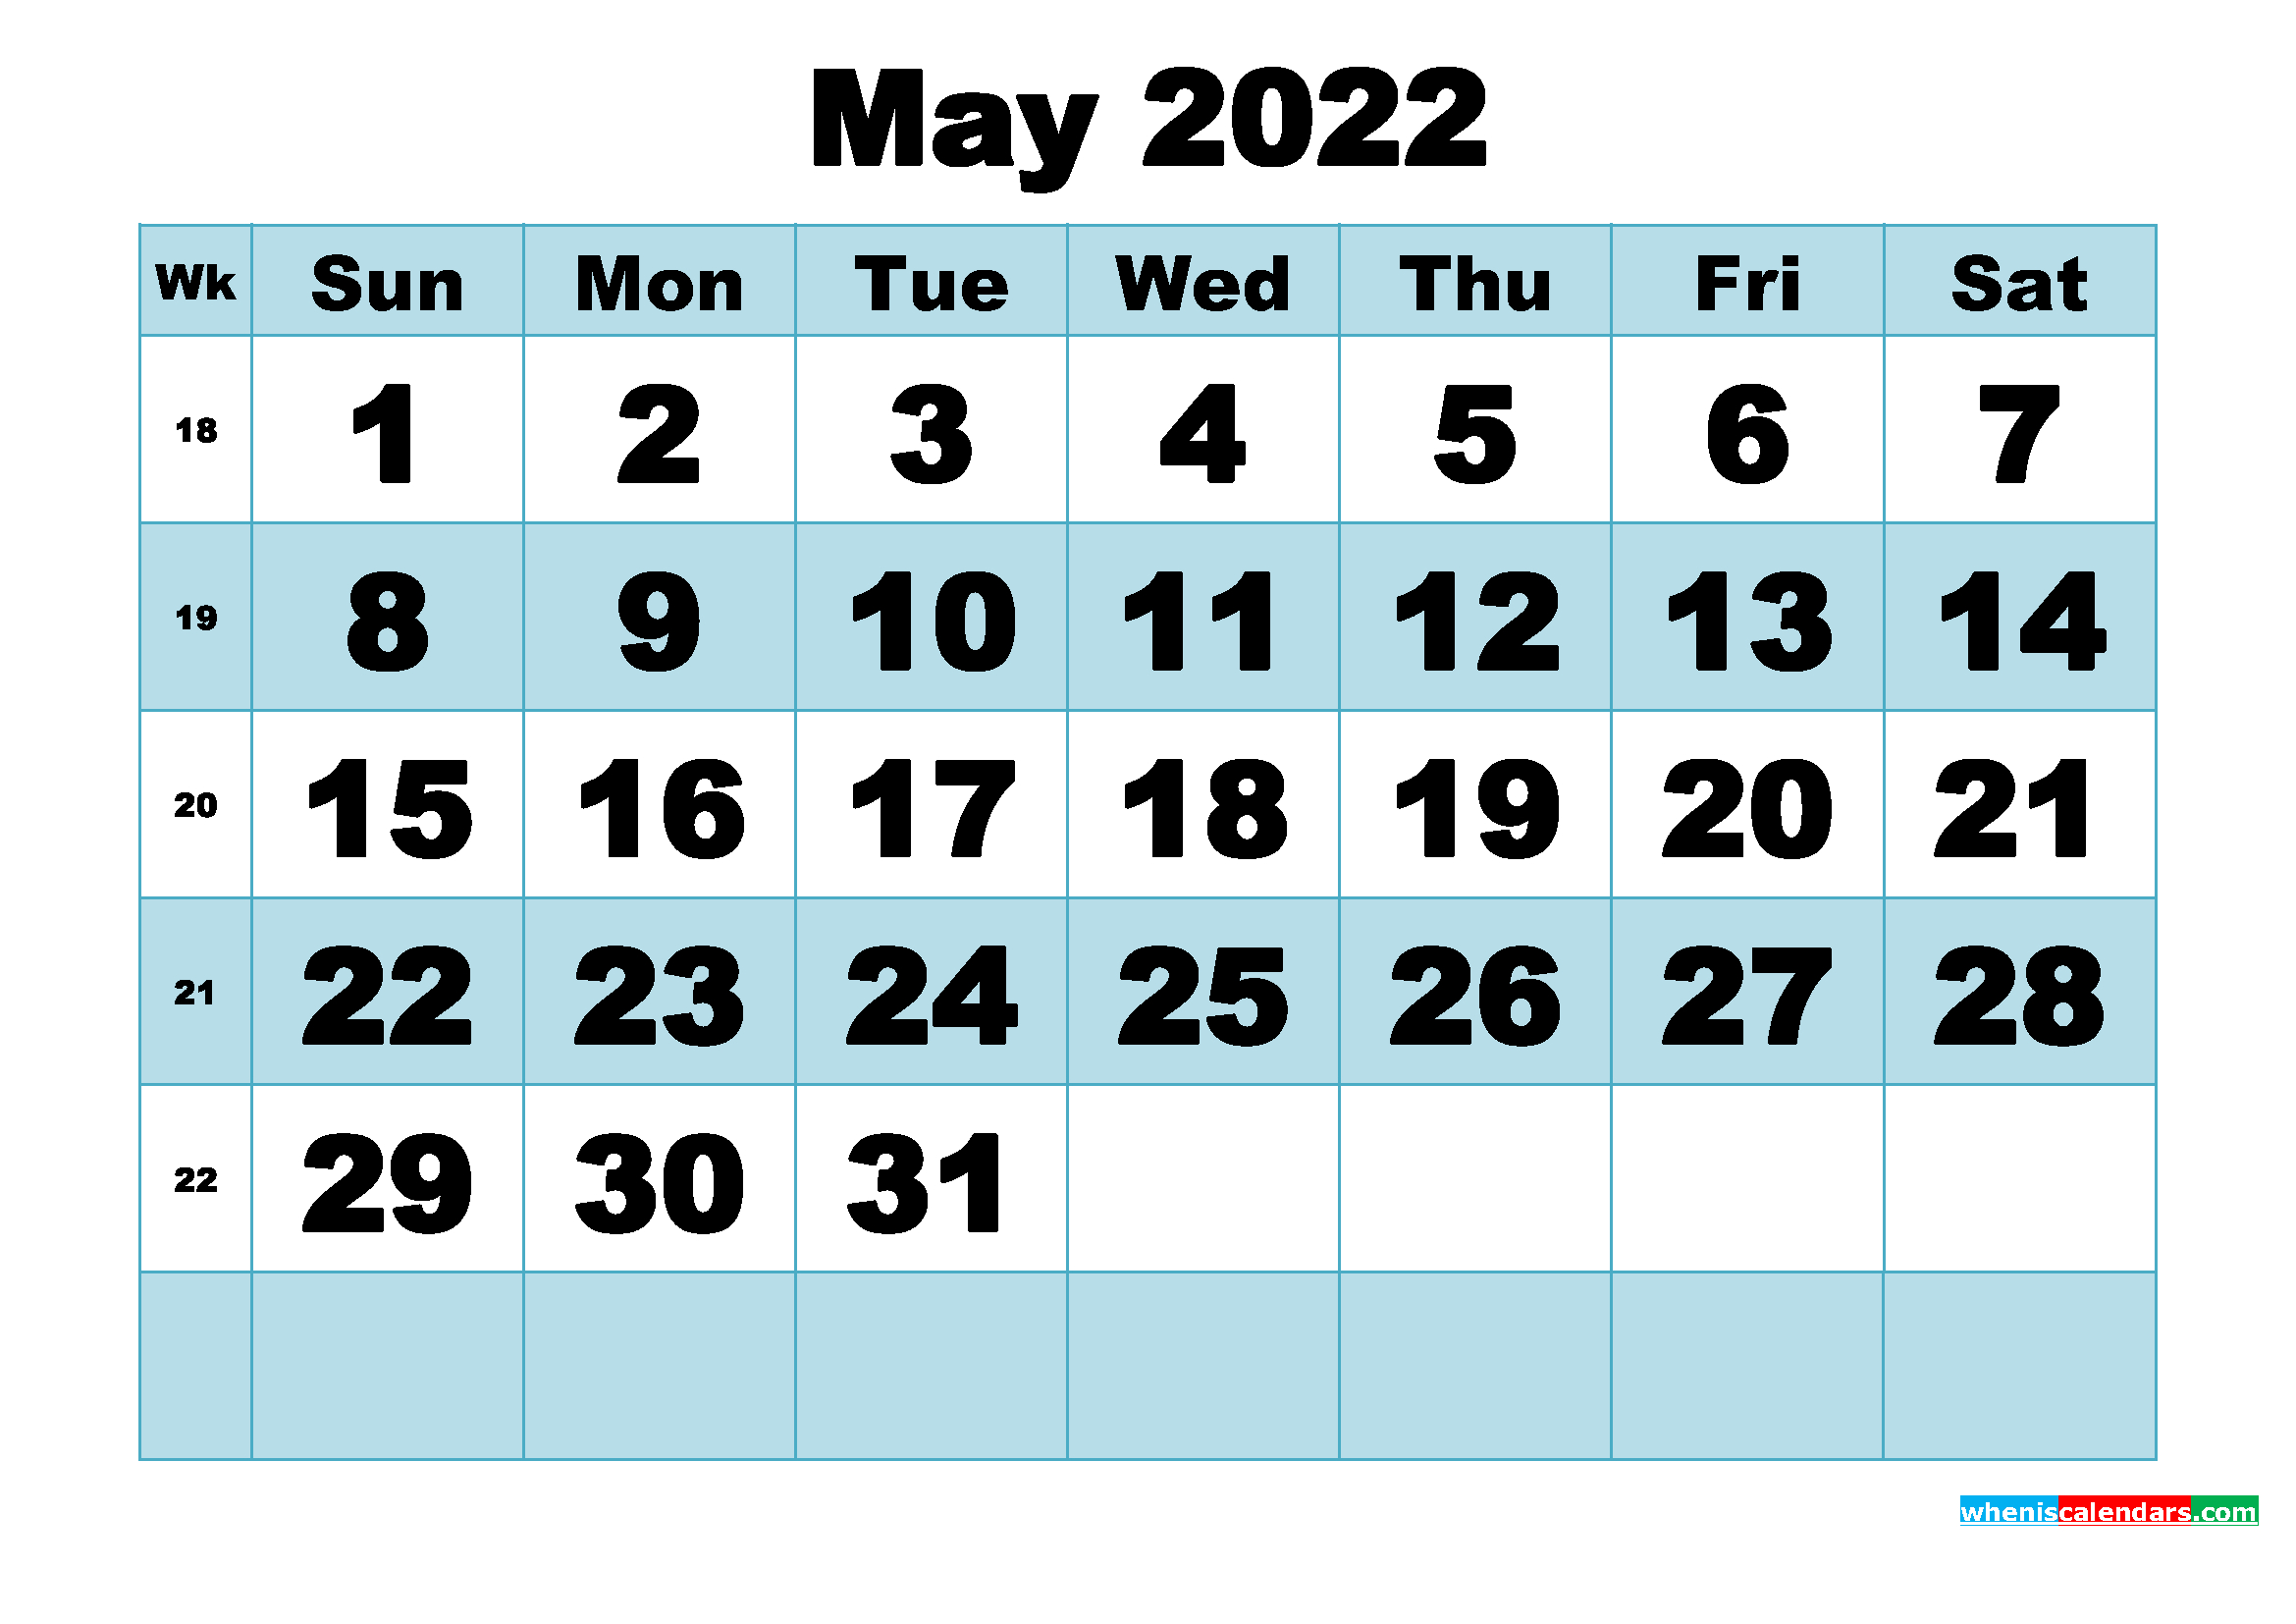 Free Printable May 2022 Calendar Word, Pdf, Image  2022 Calendar Printable May